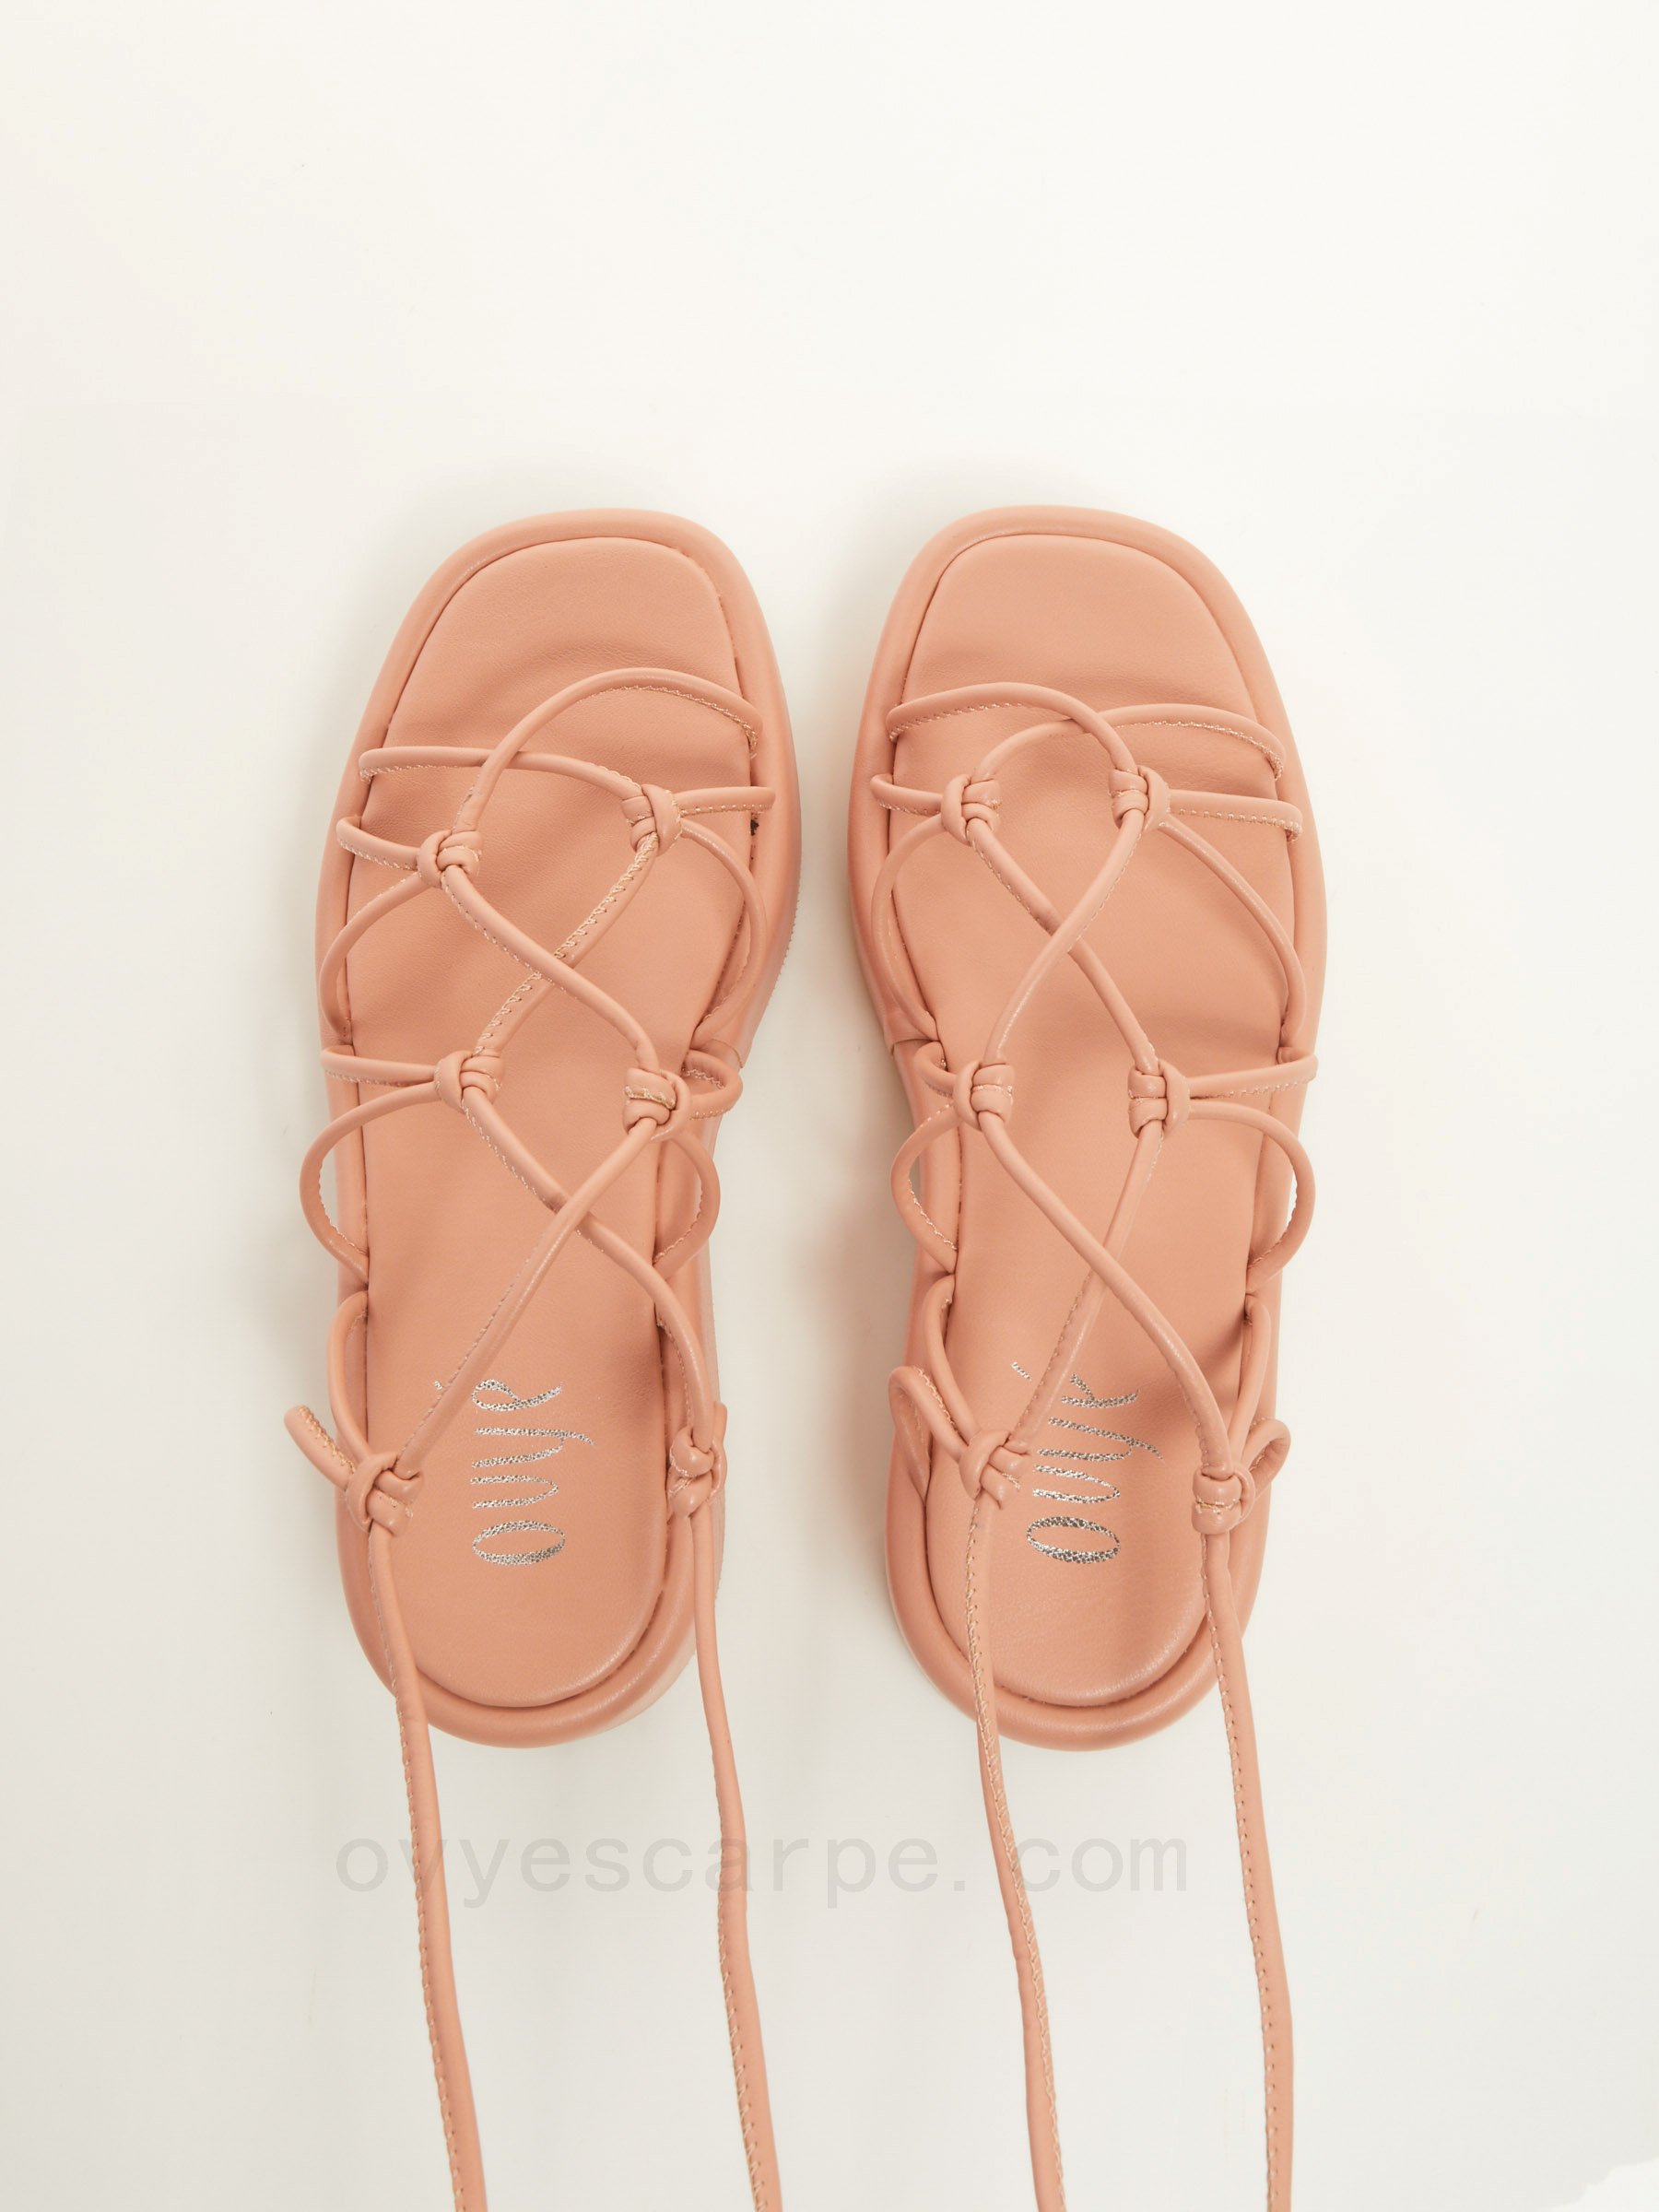 Comperare Greek Flat Sandals F08161027-0453 Basso Prezzo